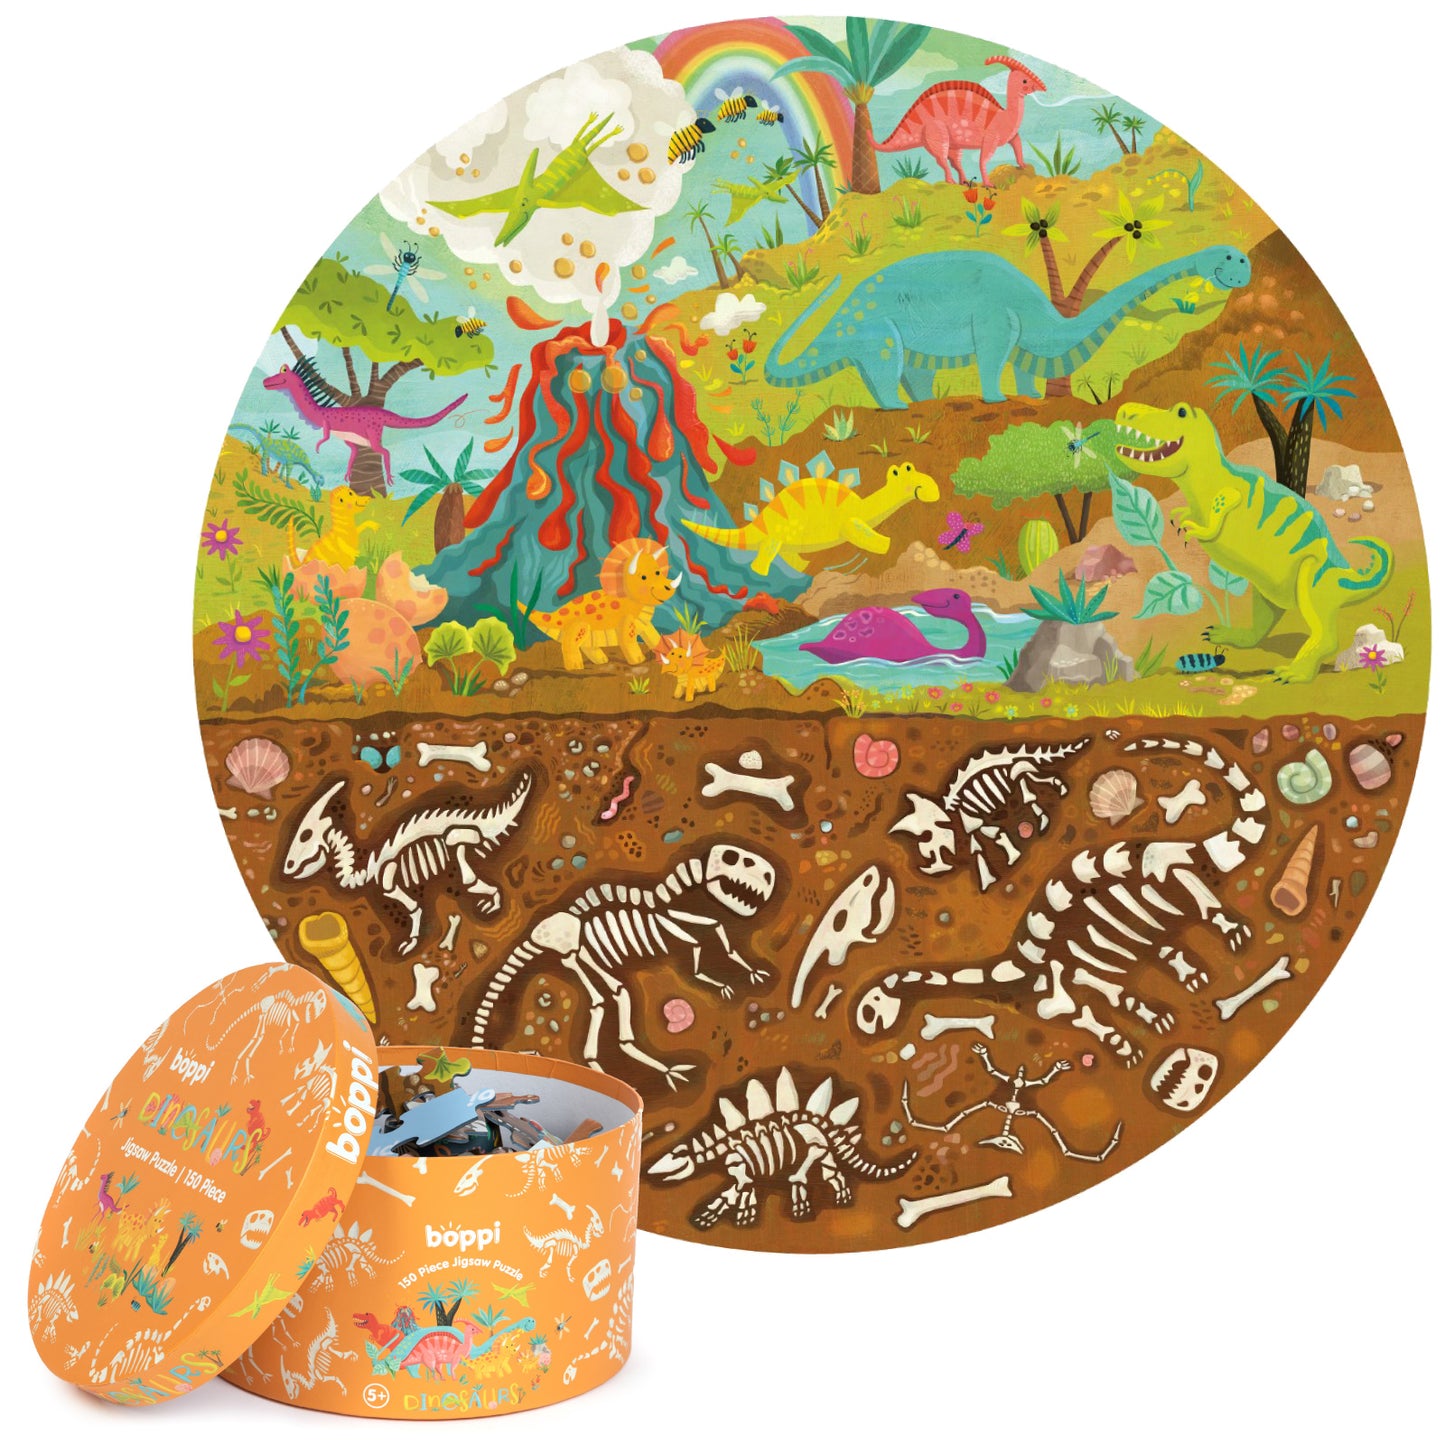 Boppi Round Jigsaw - 150 Pieces - Dinosaurs